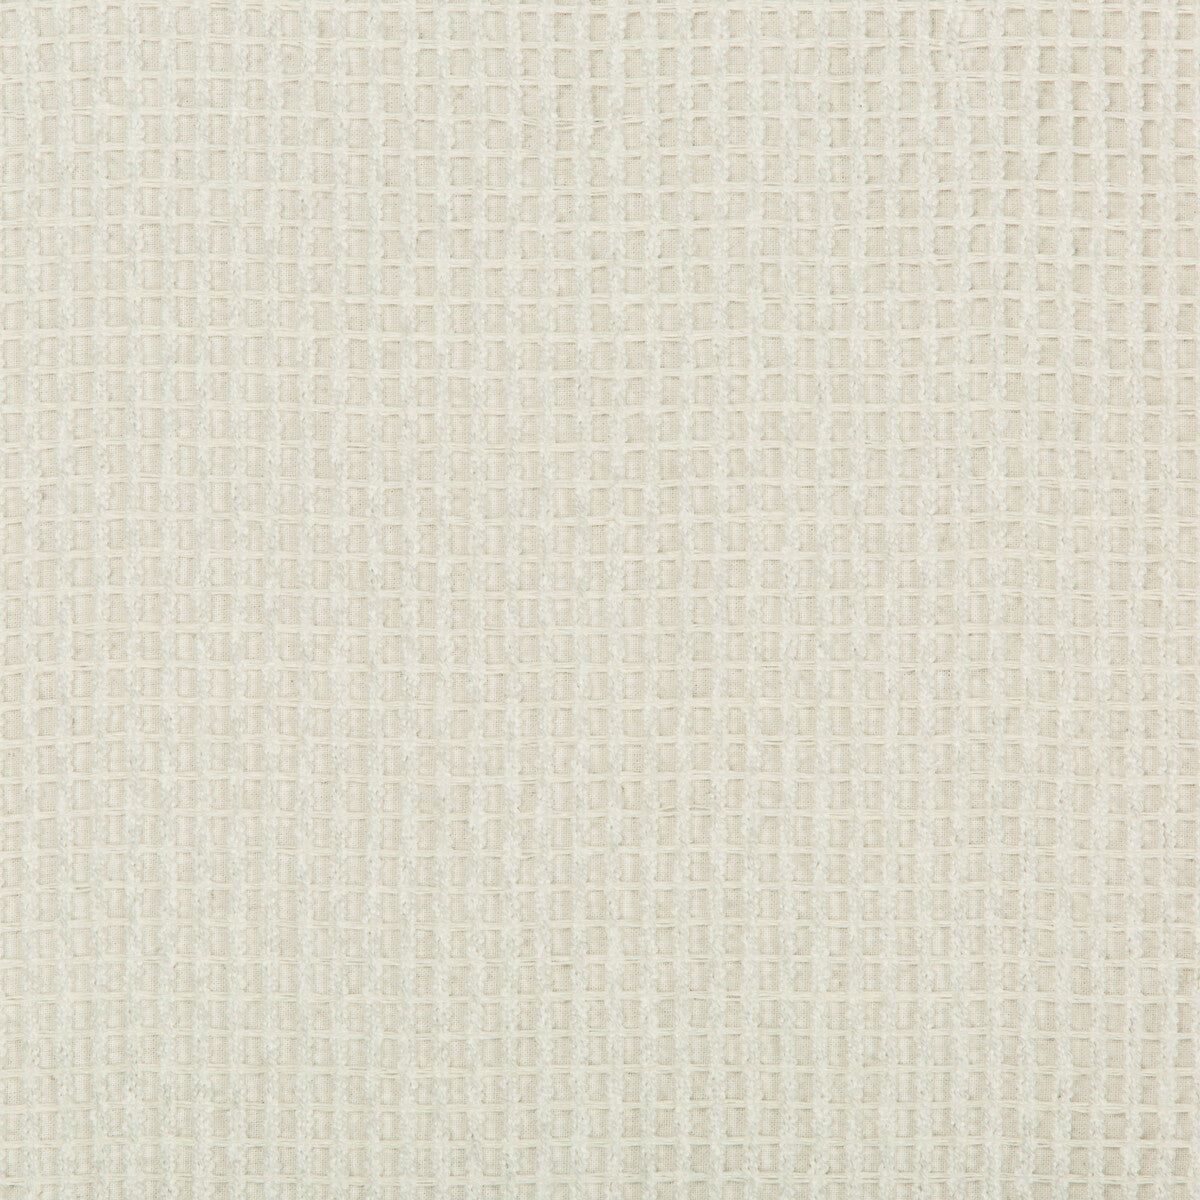 Kravet Design fabric in 4600-1 color - pattern 4600.1.0 - by Kravet Design